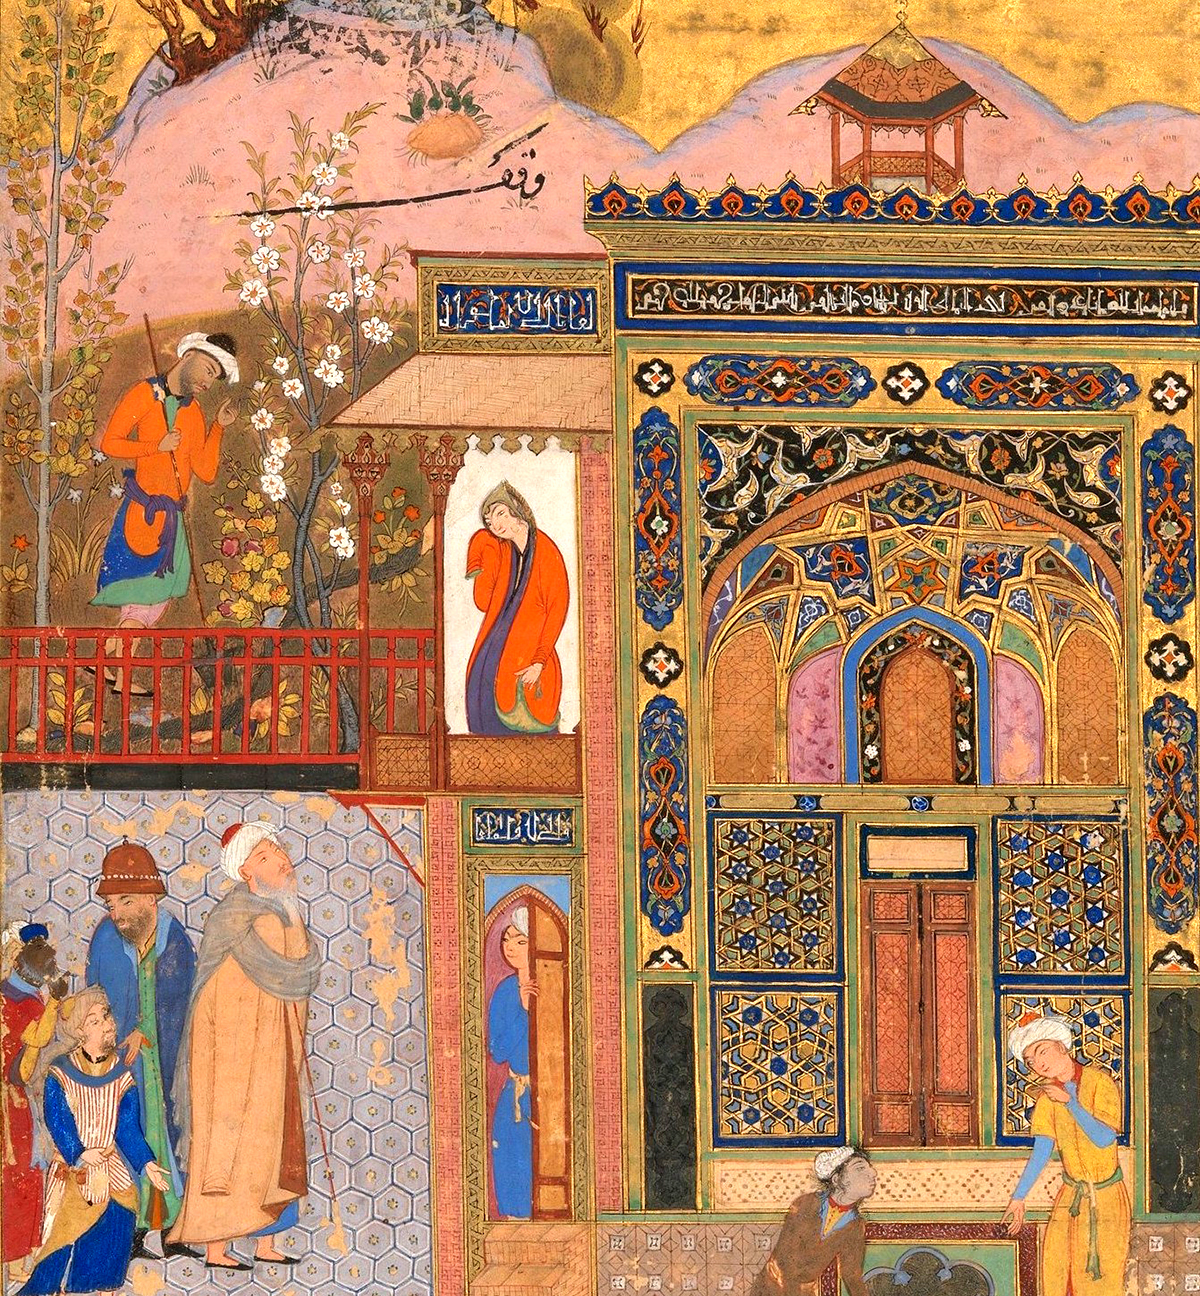 Shaykh San‘an beneath the balcony of the Christian maiden